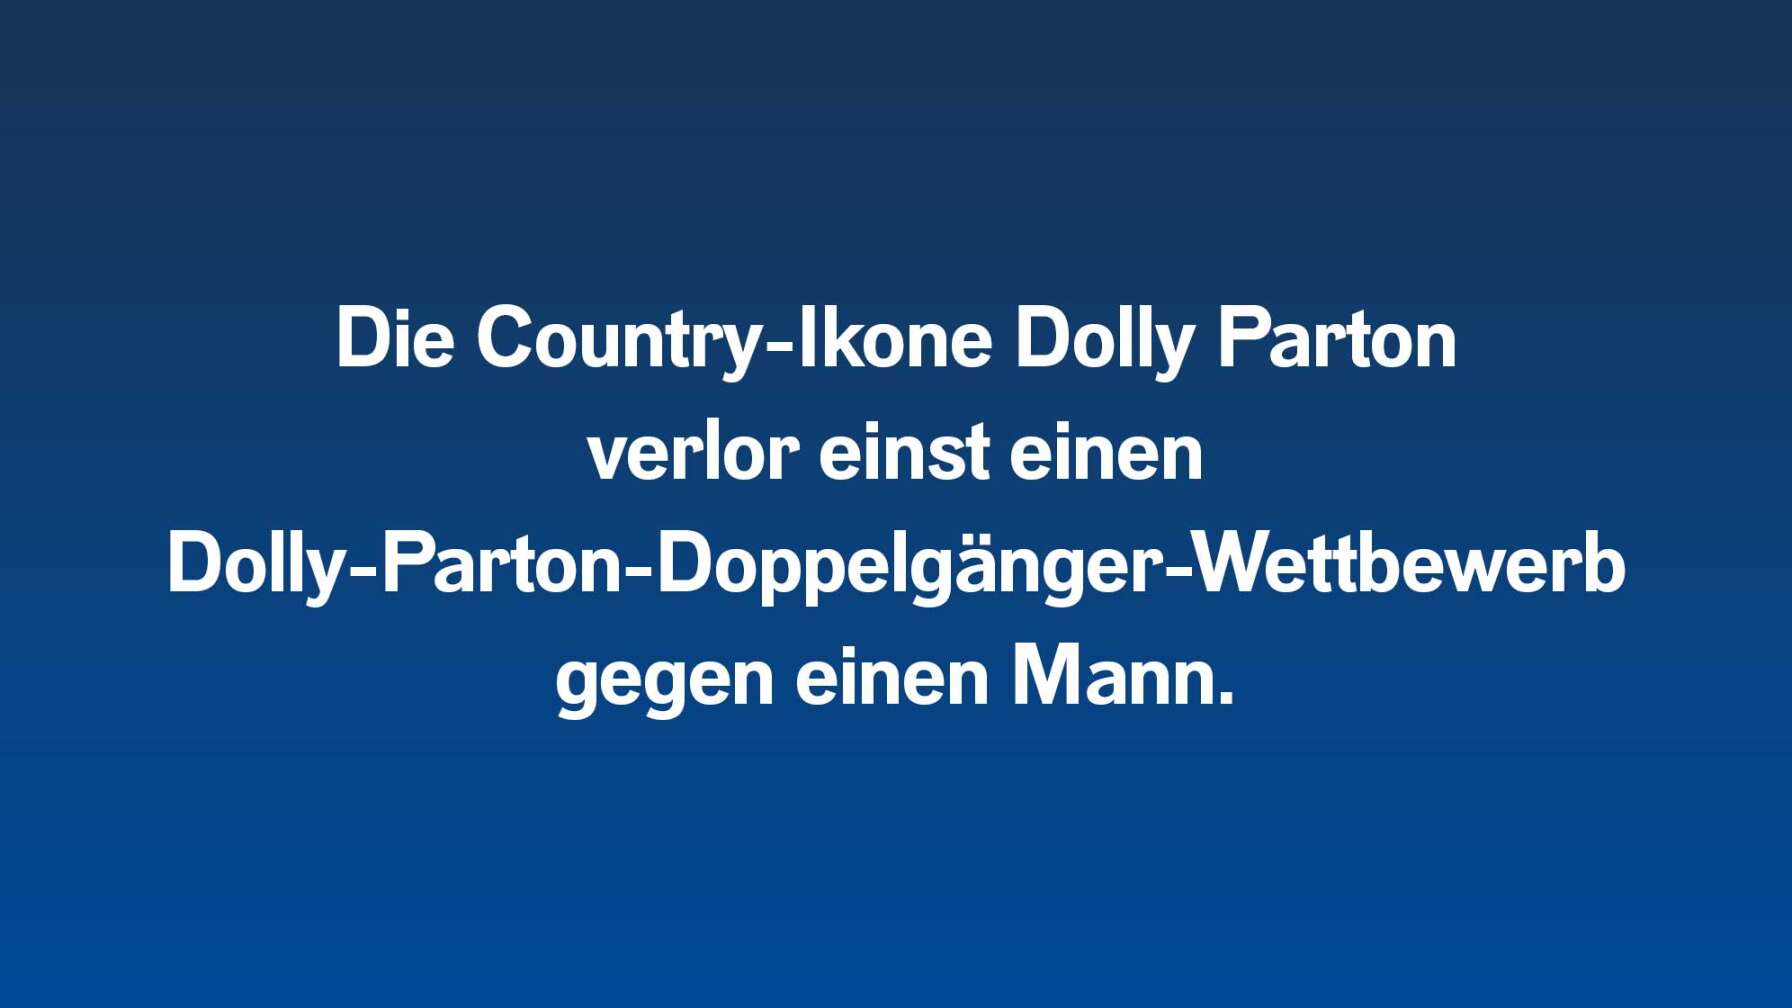 Die Country-Ikone Dolly Parton  verlor einst einen Dolly-Parton-Doppelgänger-Wettbewerb gegen einen Mann.